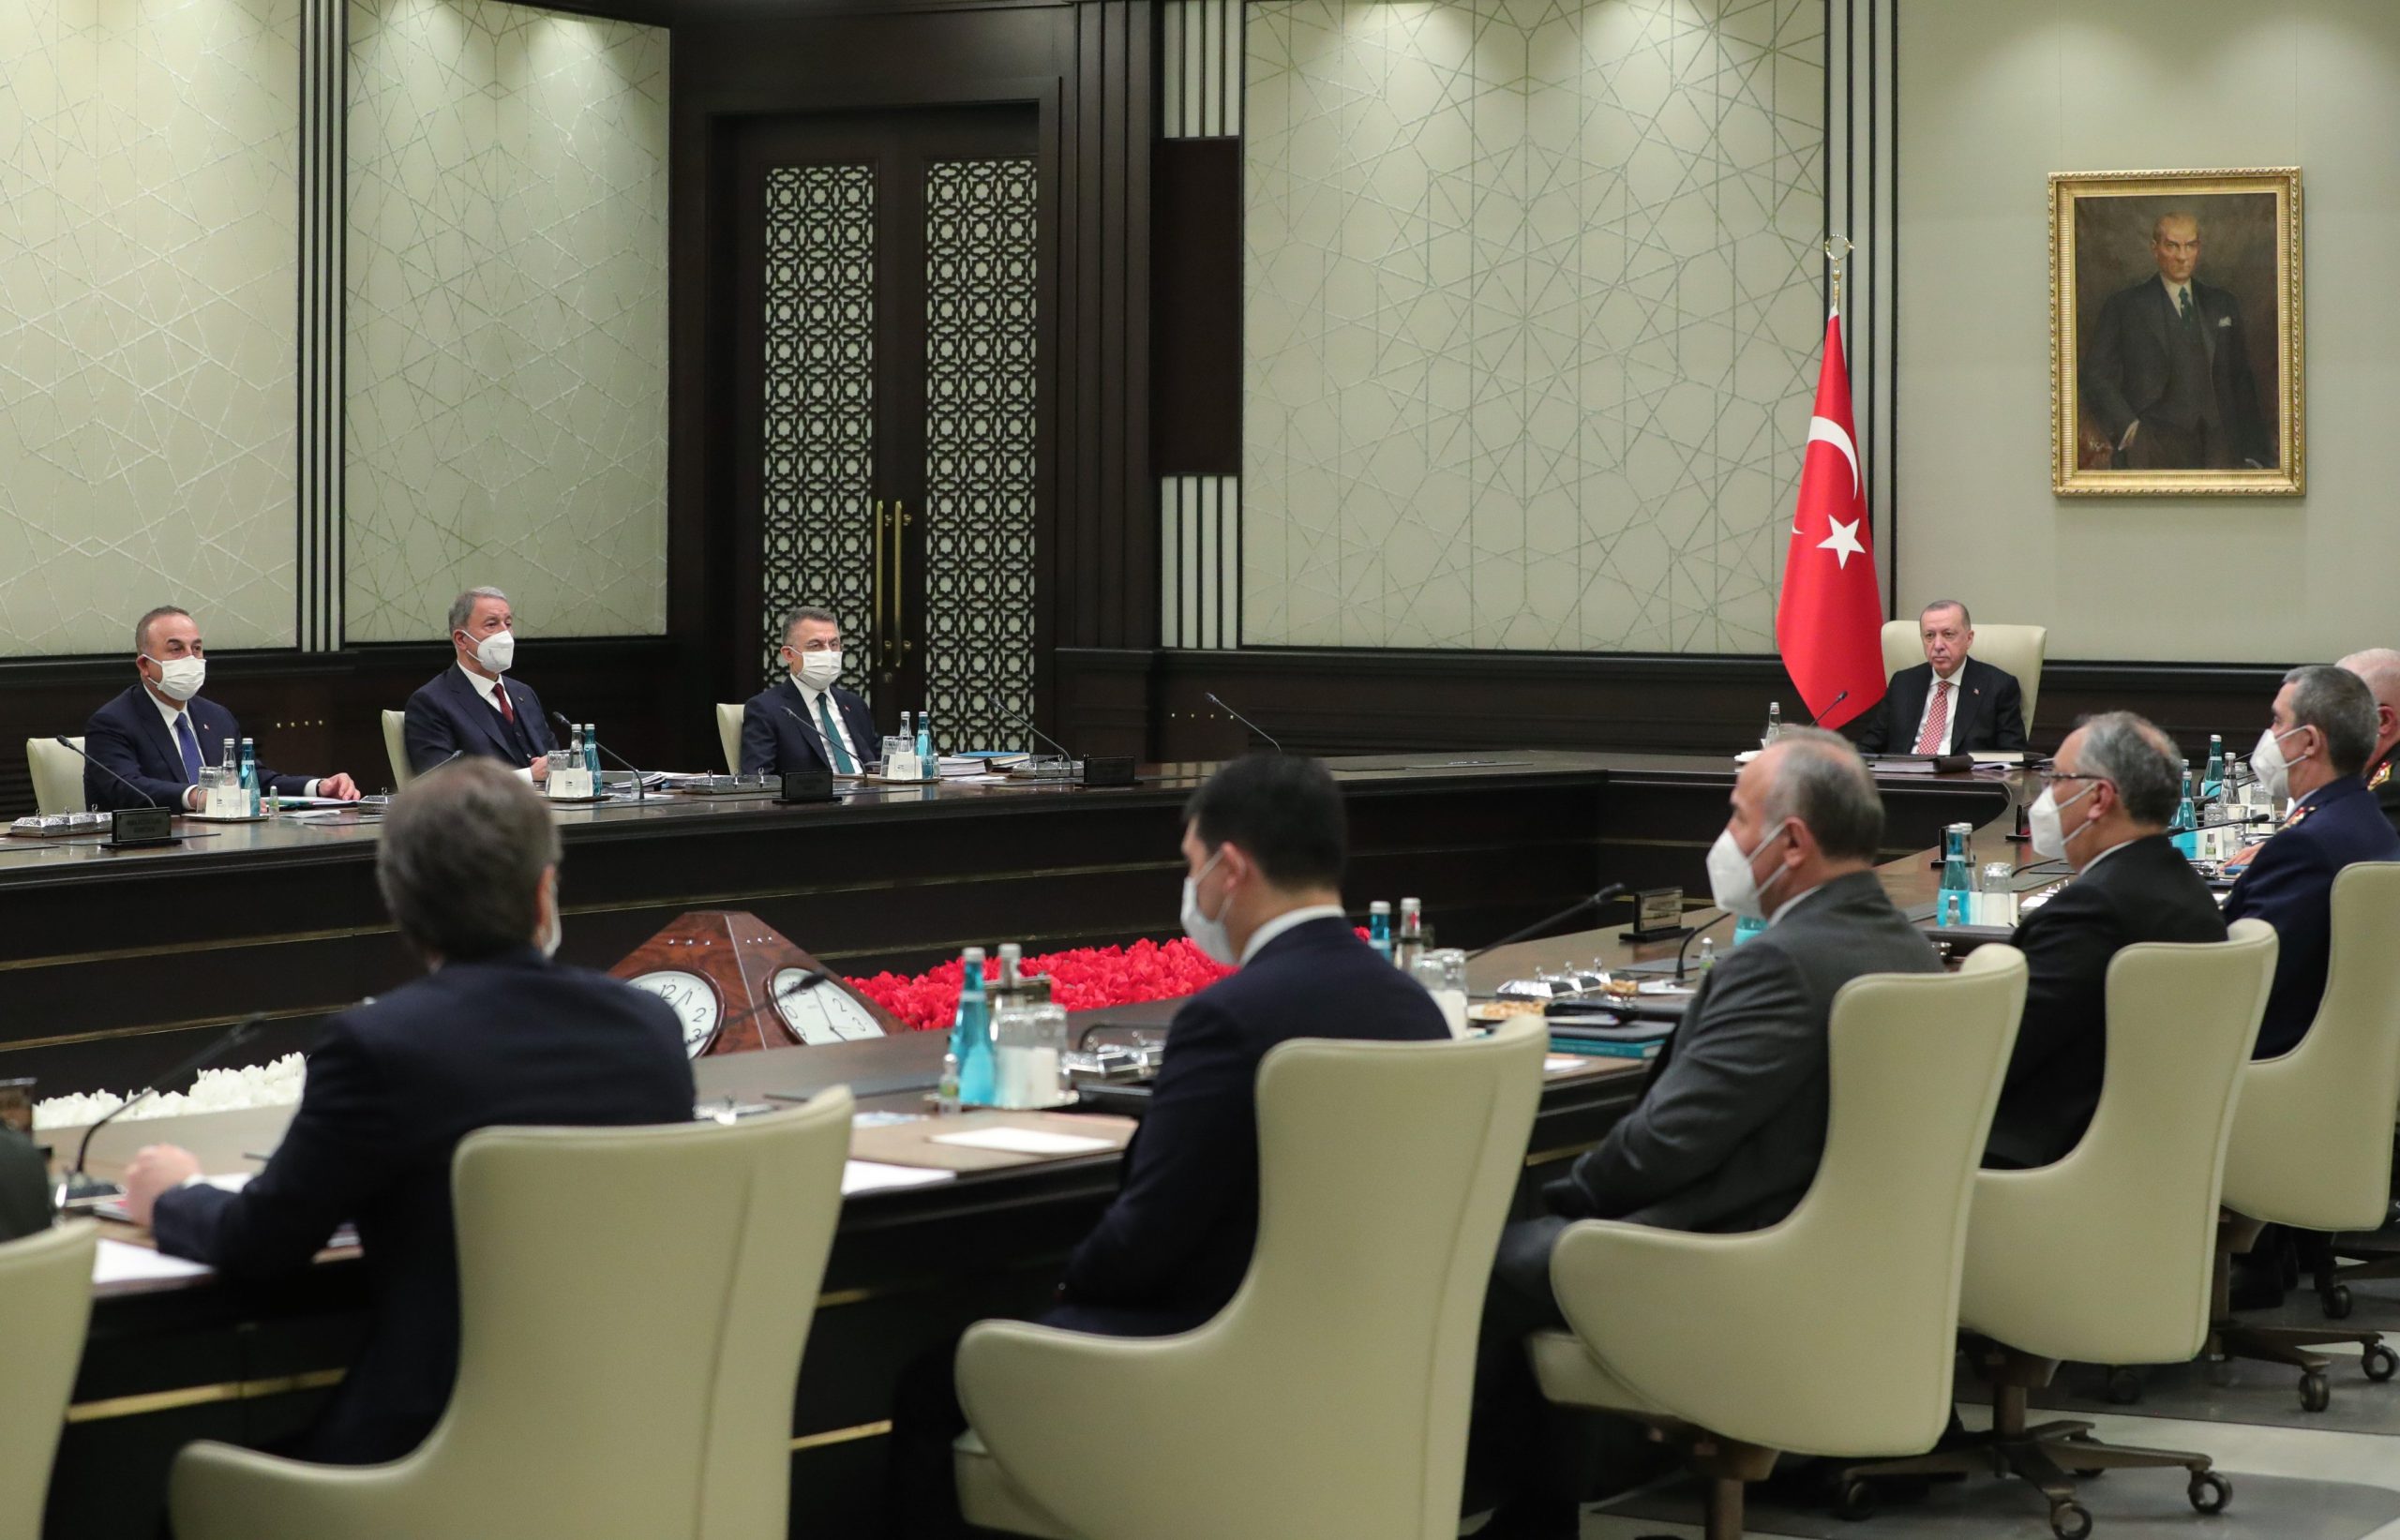 Επιθετική ανακοίνωση του Συμβουλίου Ασφαλείας της Τουρκίας κατά Ελλάδας! Θα πάει ο Δένδιας στην Άγκυρα;